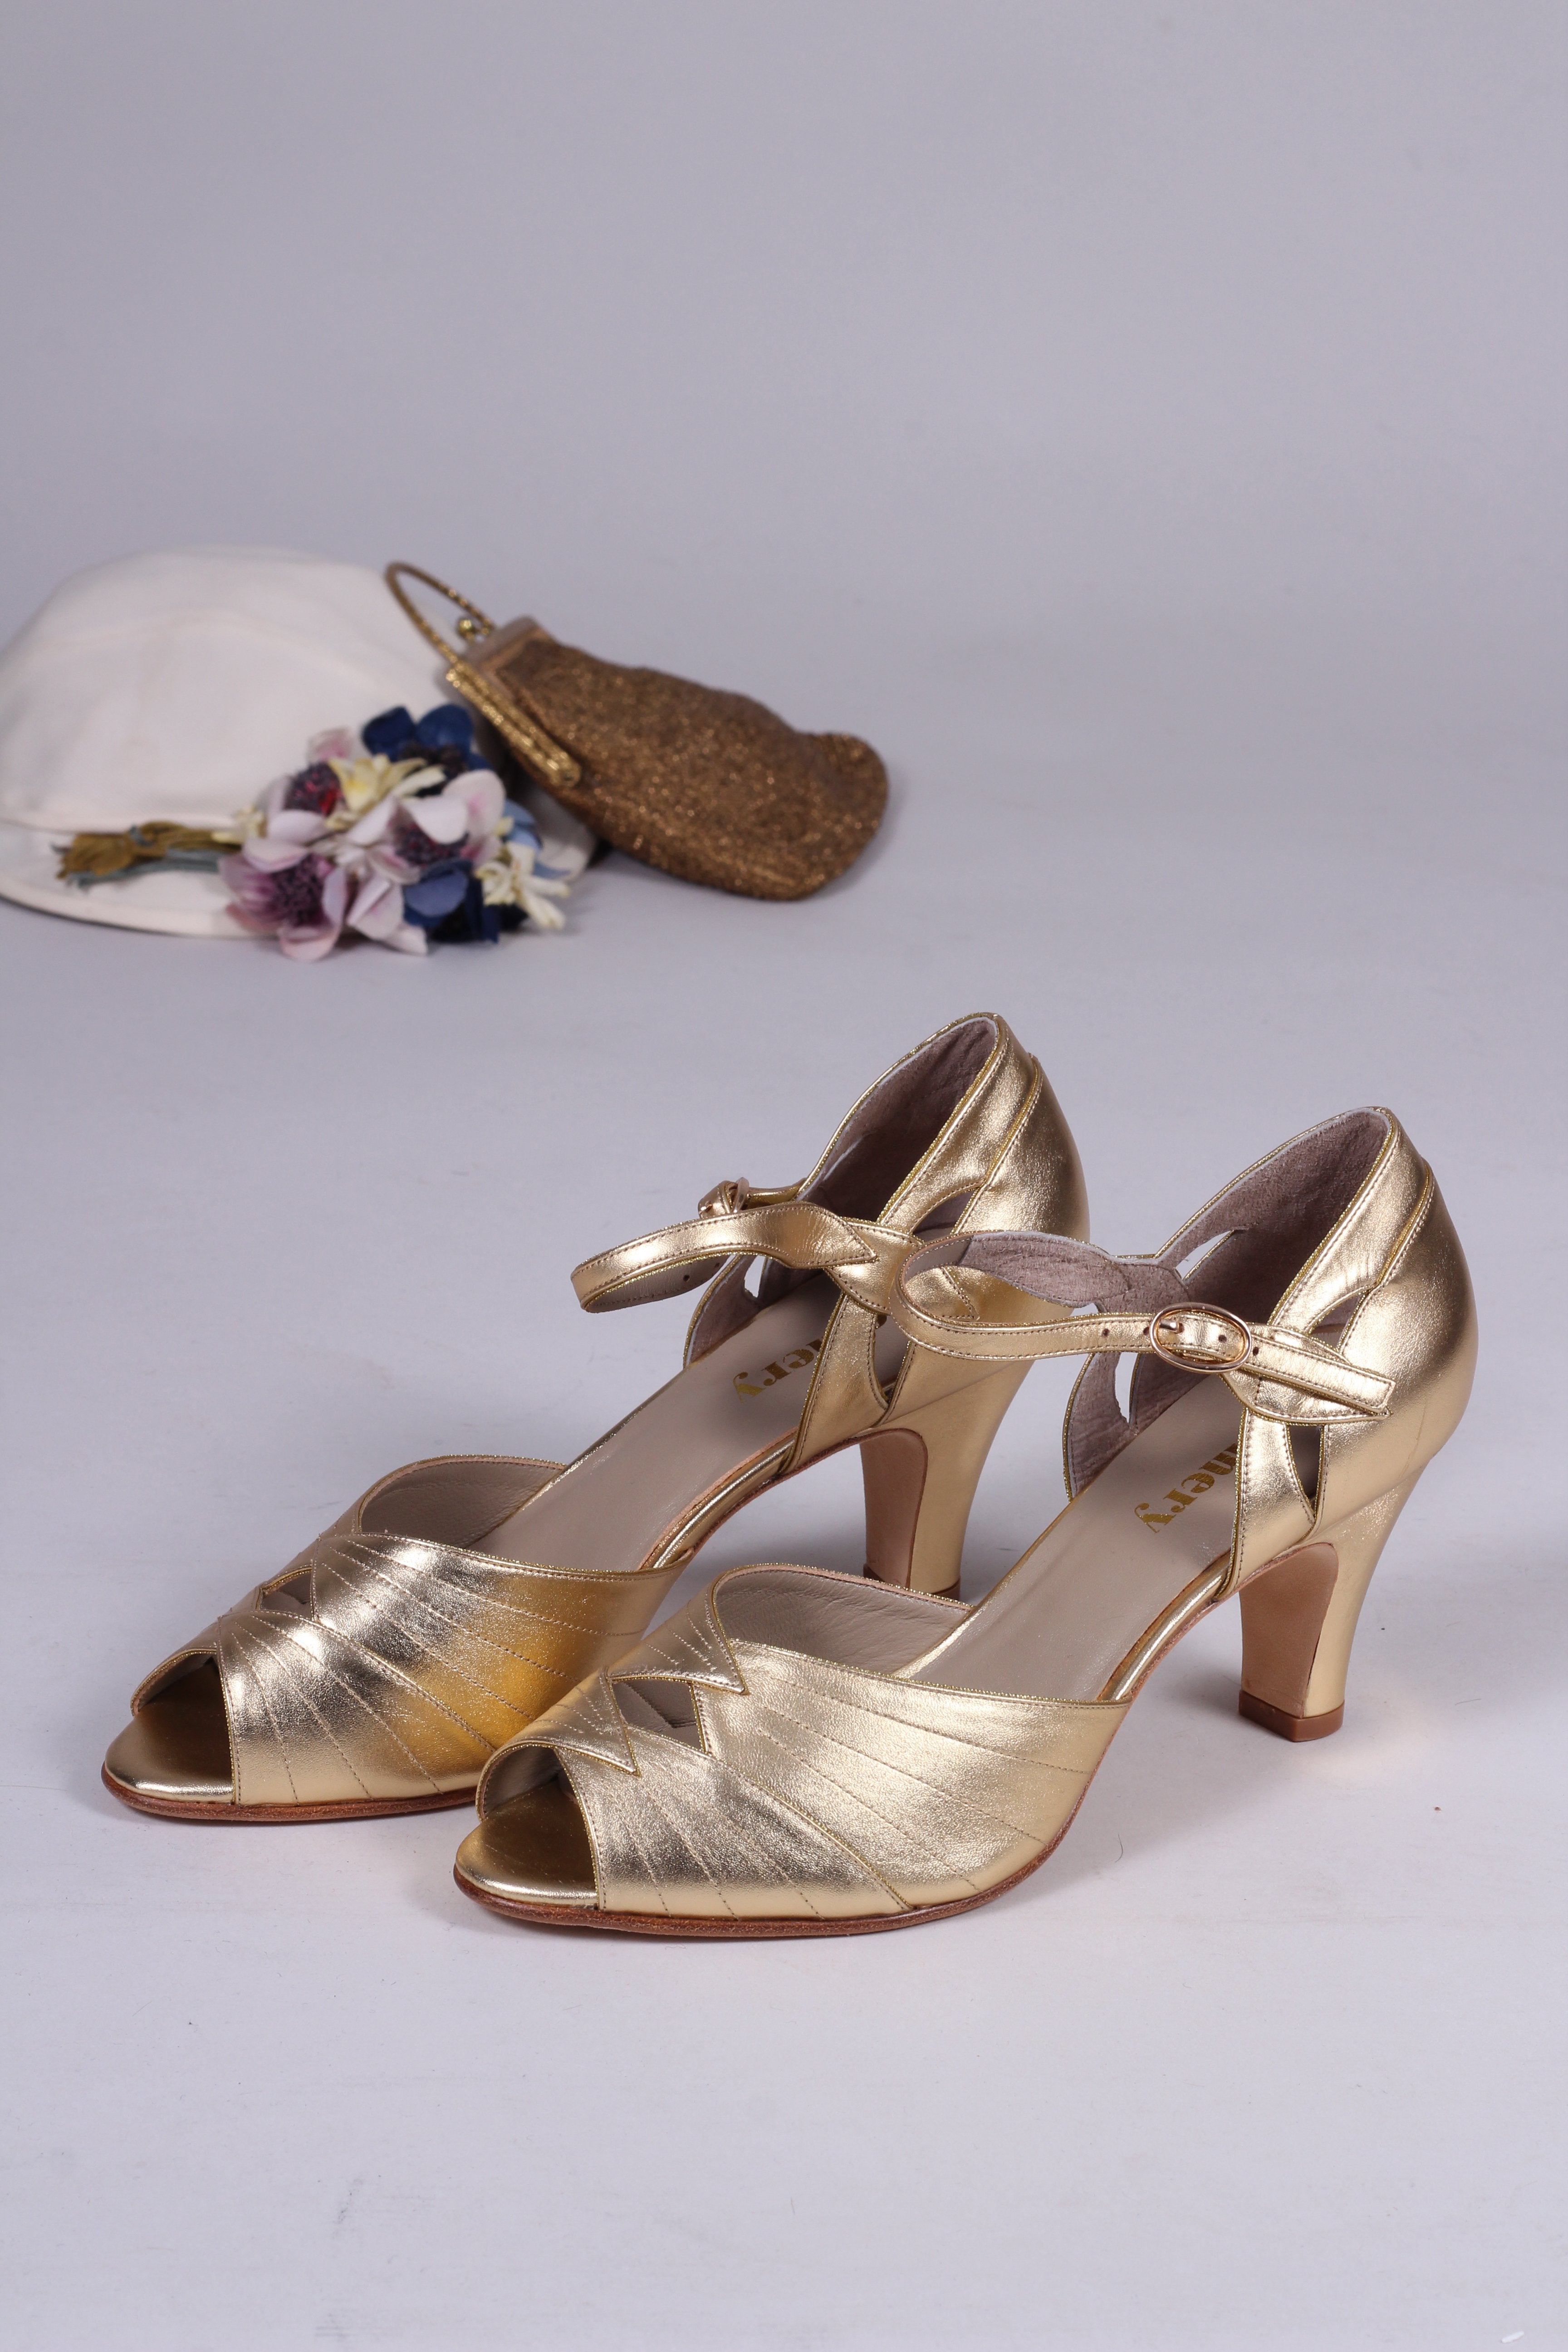 landheer Reizende handelaar het winkelcentrum 30s inspired high heel evening shoes - gold - Susan – memery